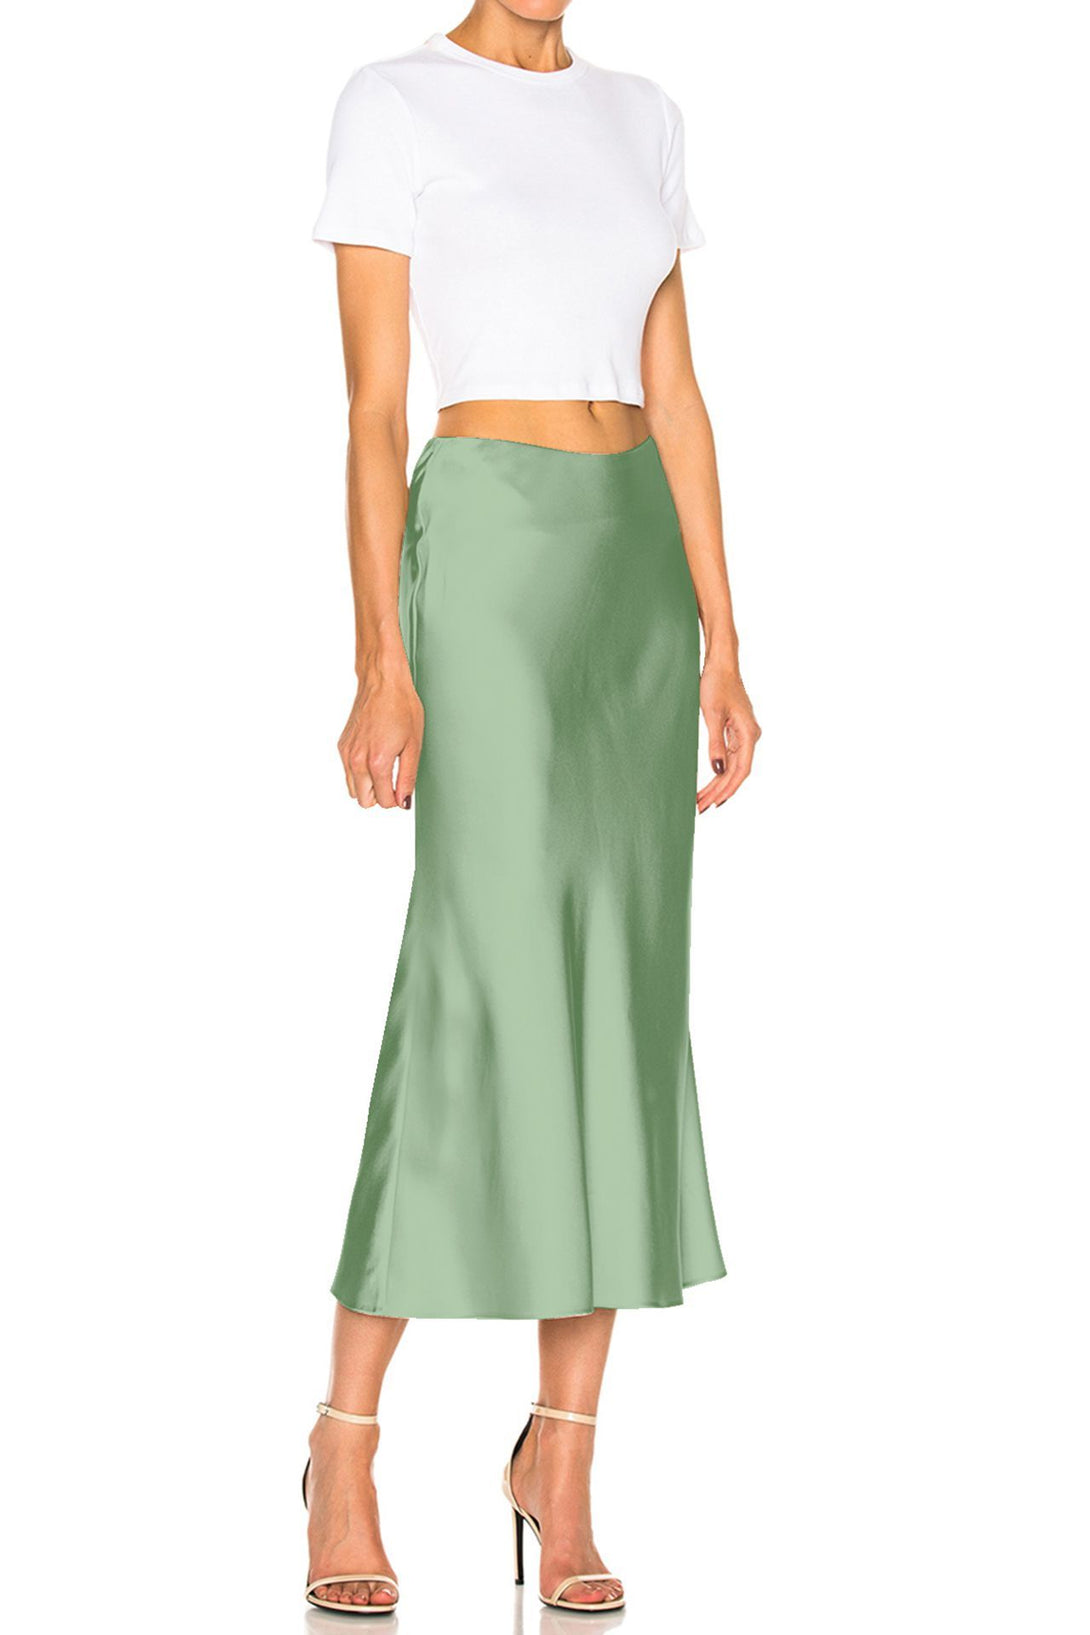 Designer-Skirt-In-Mint-For-Womens-By-Kyle-Richards